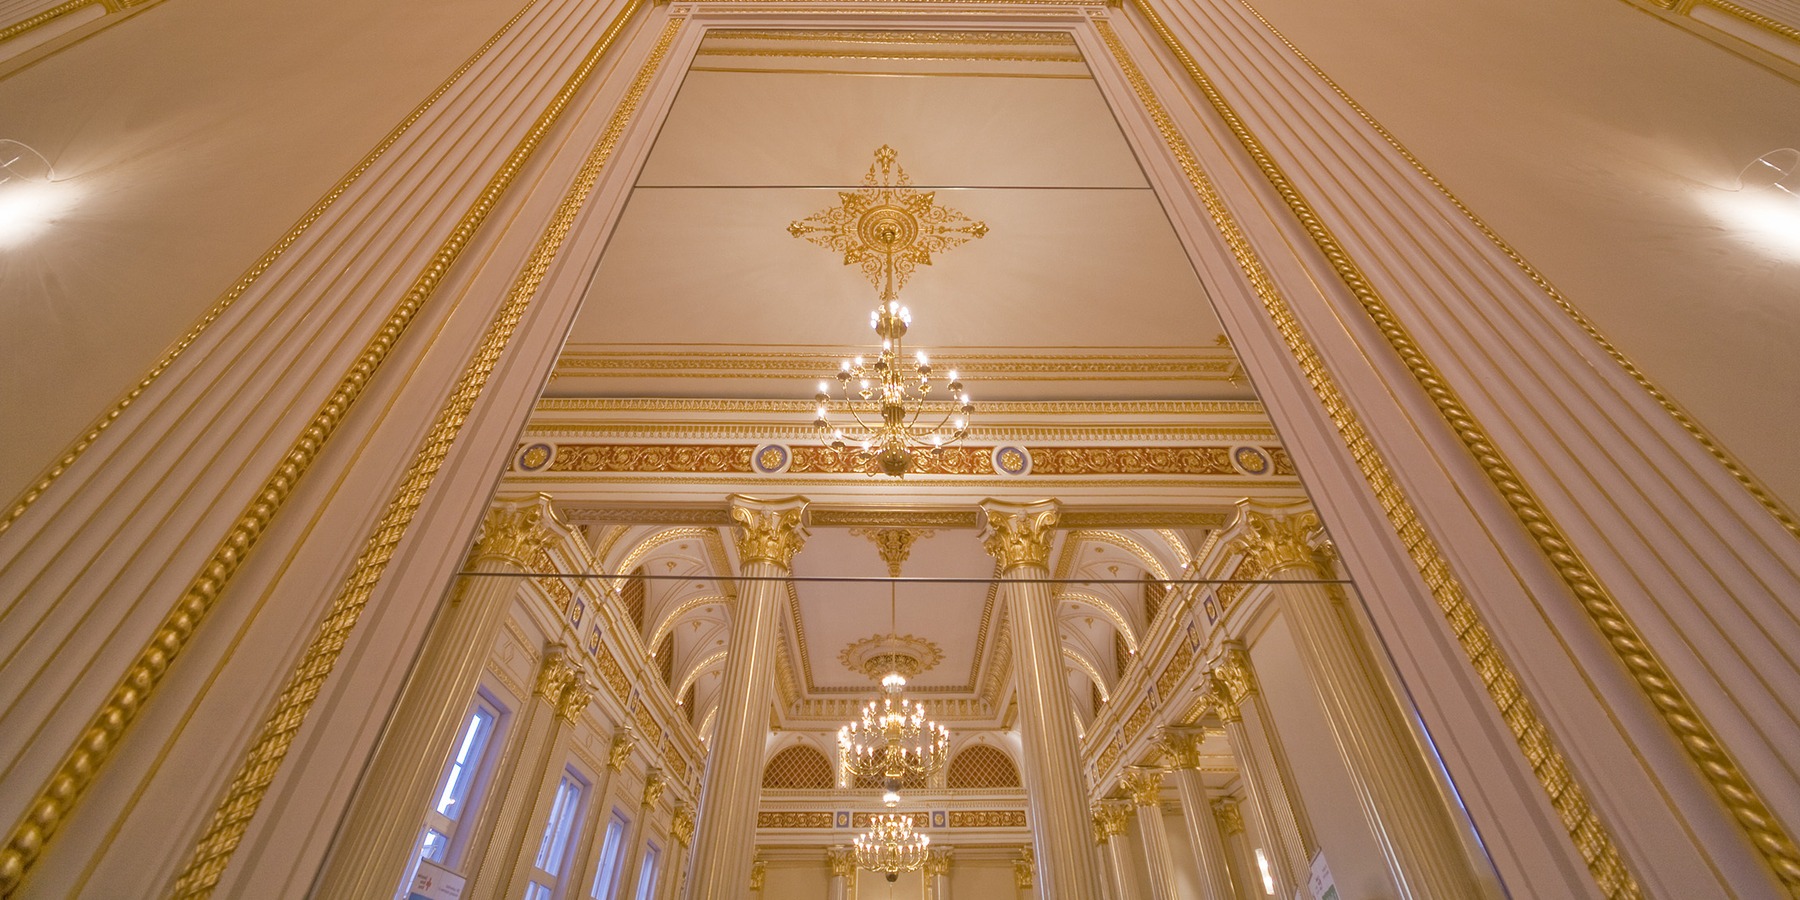 Spieglein, Spieglein an der Wand, der Goldene Saal ist einer der schönsten im ganzen Land. © 2020 Christian Hoffmann, FM M-V